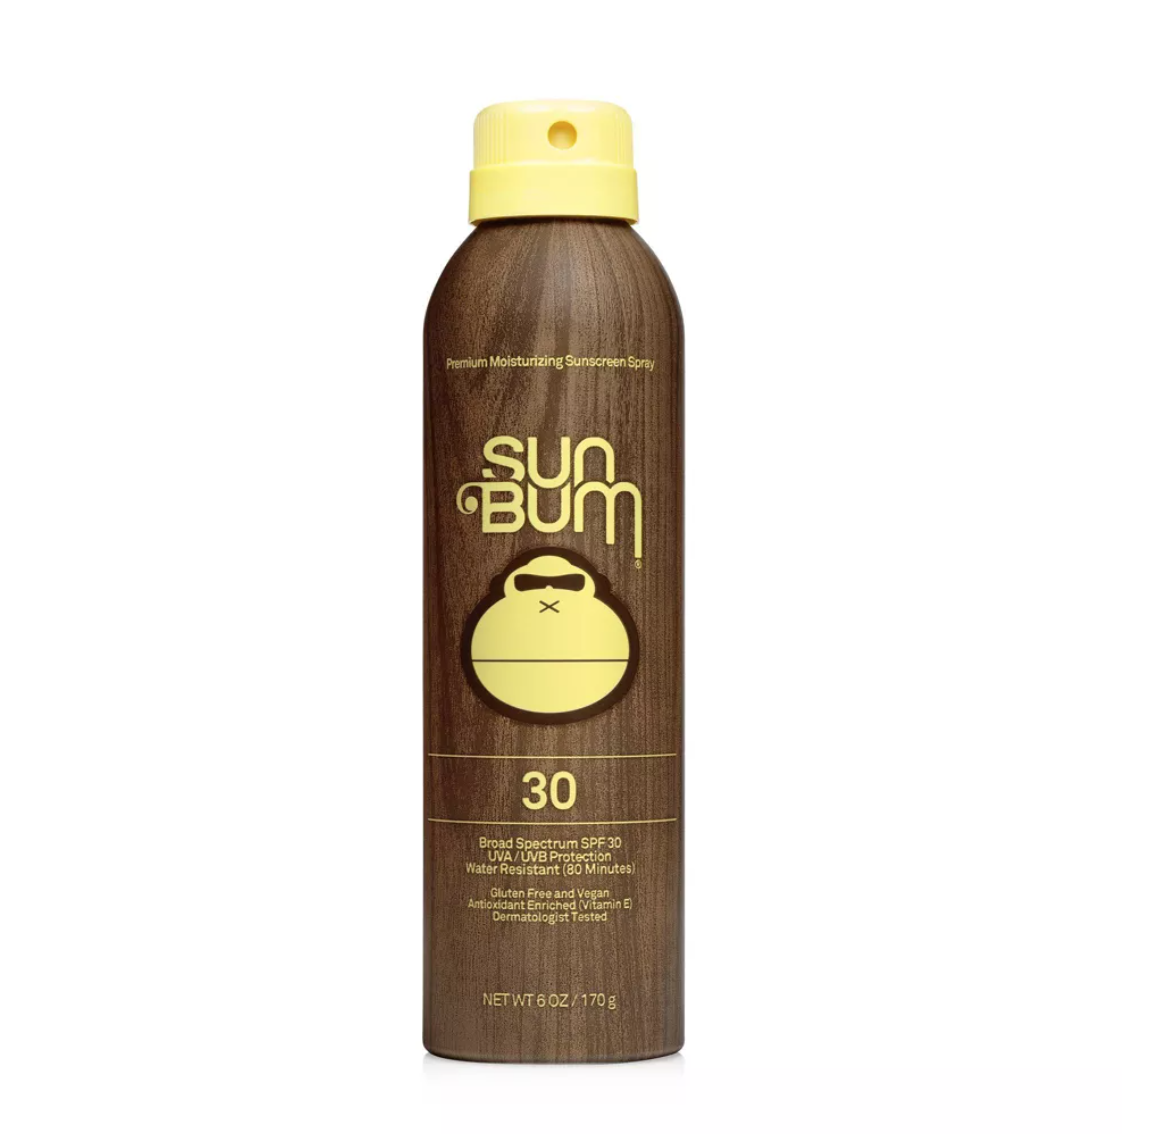  Sun Bum Original Sunscreen Spray - 6 fl oz